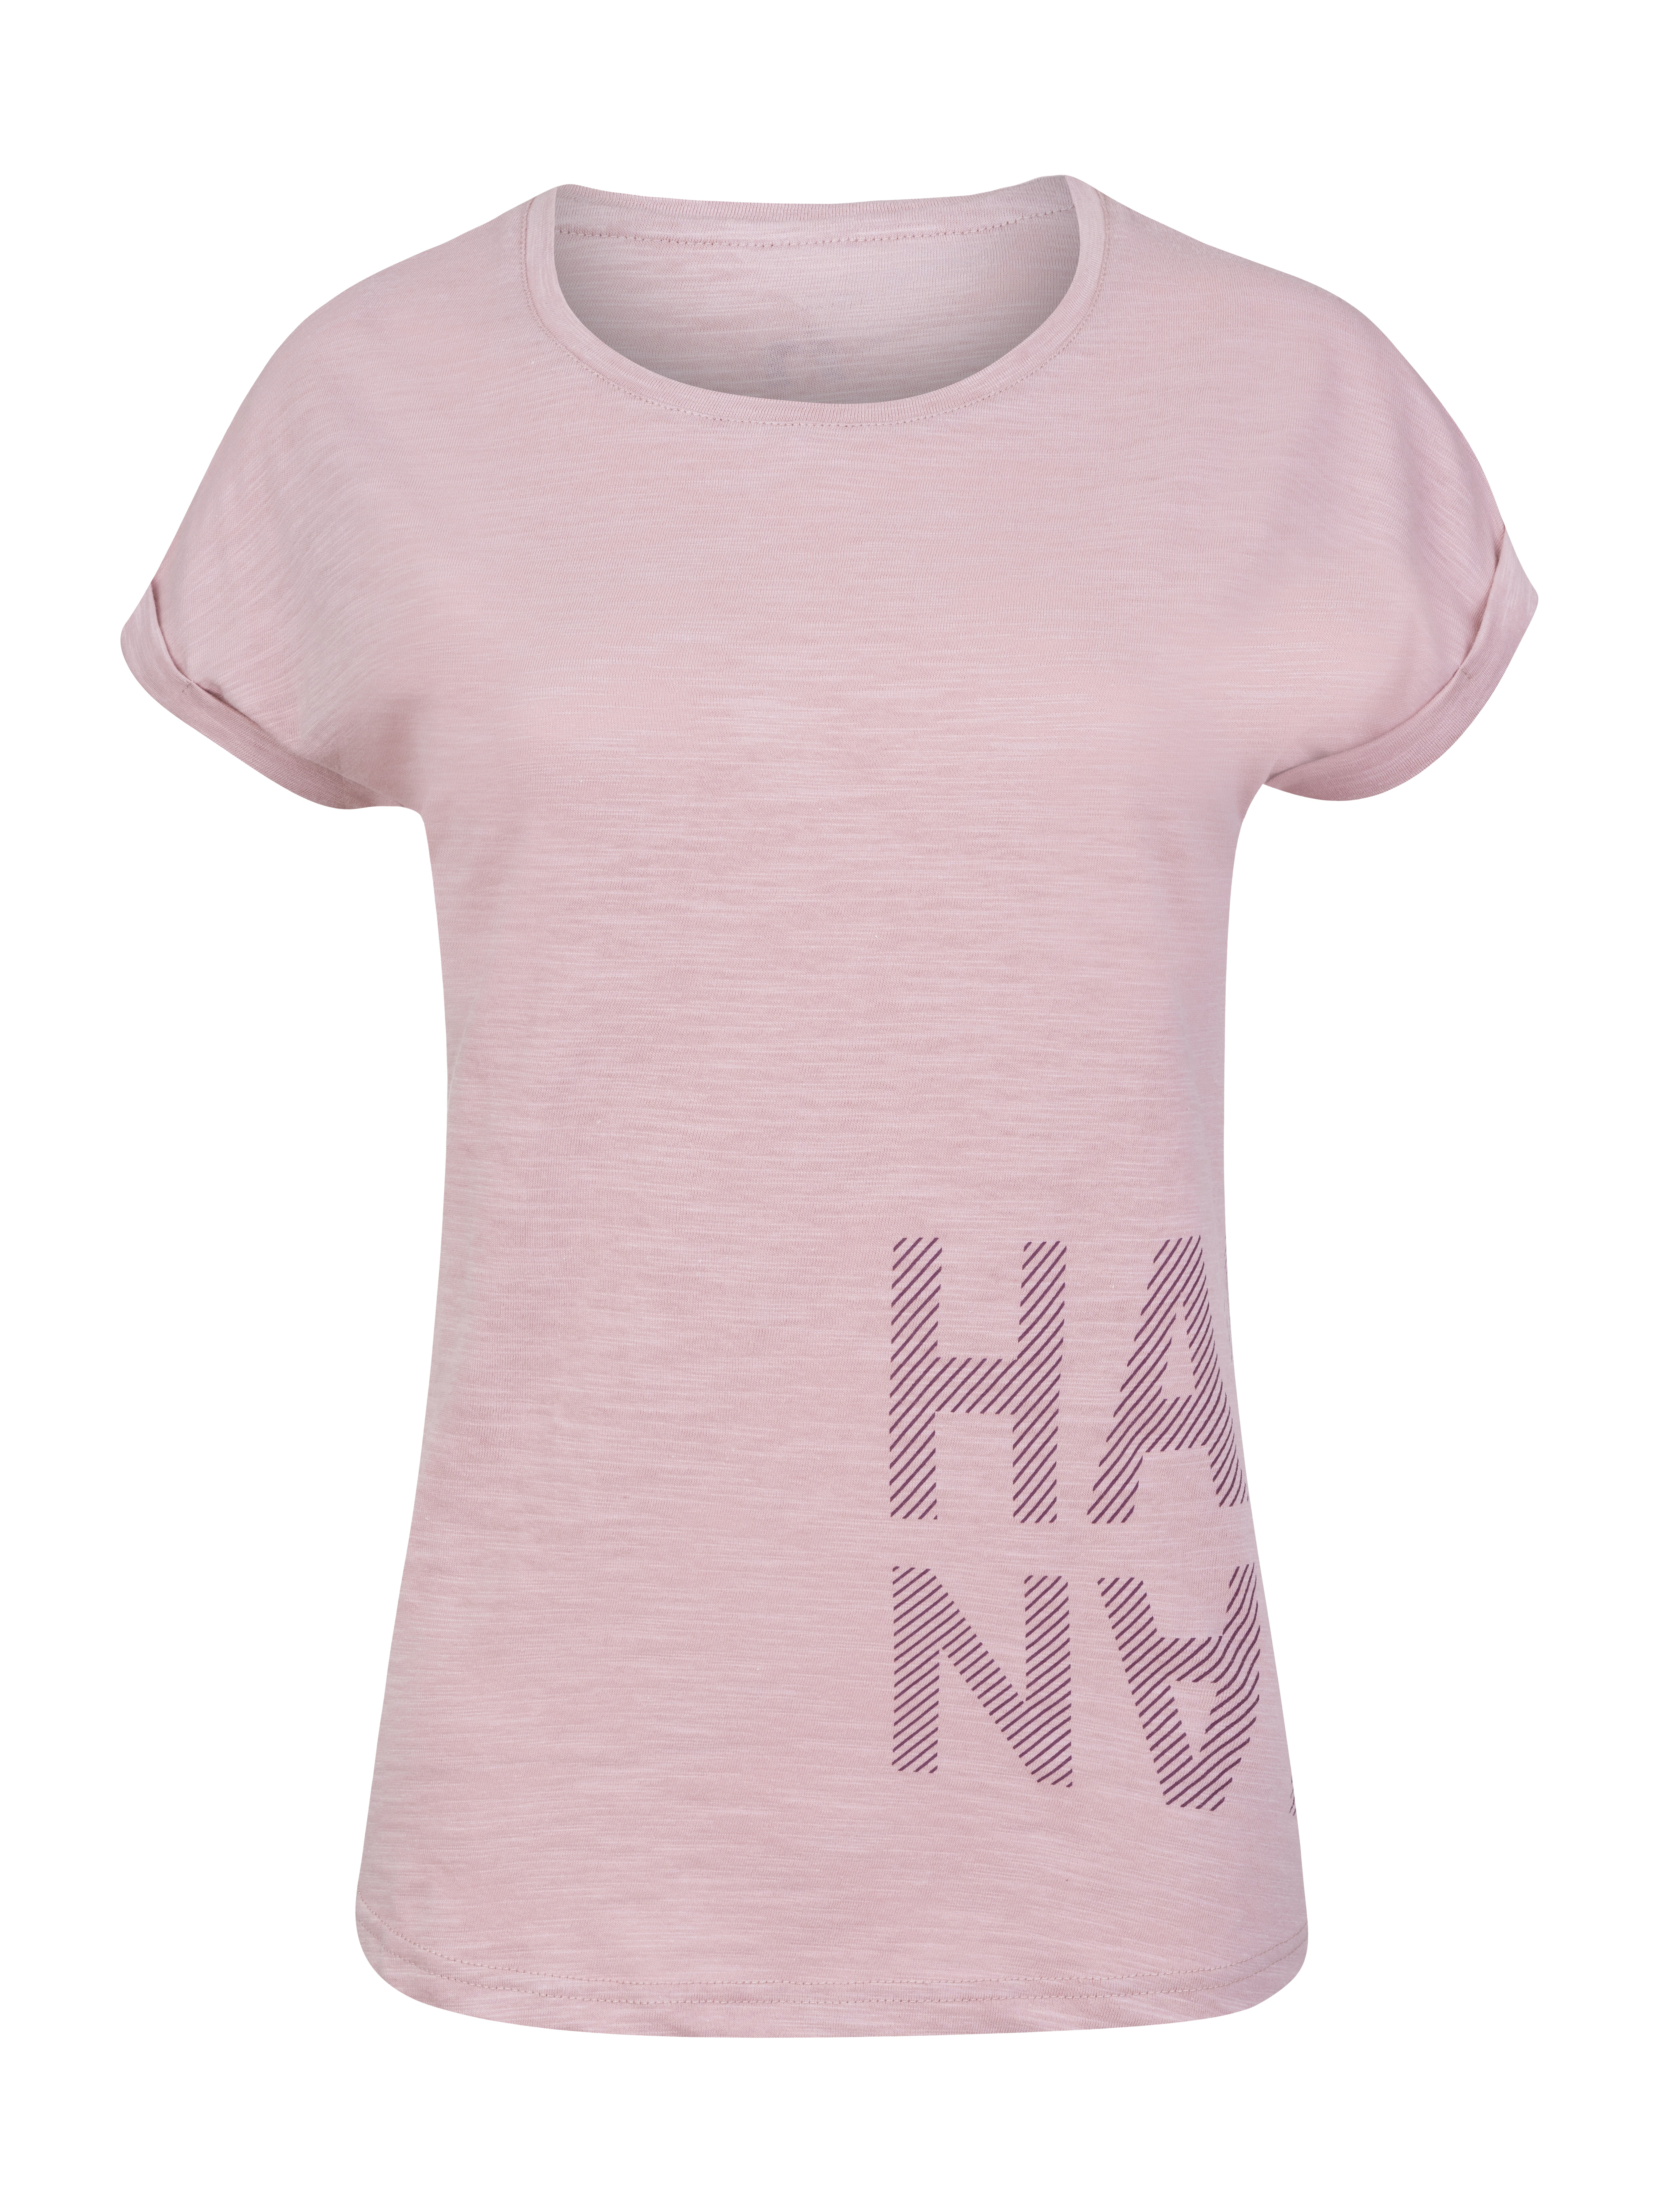 Women's T-shirt Hannah ARISSA II zephyr